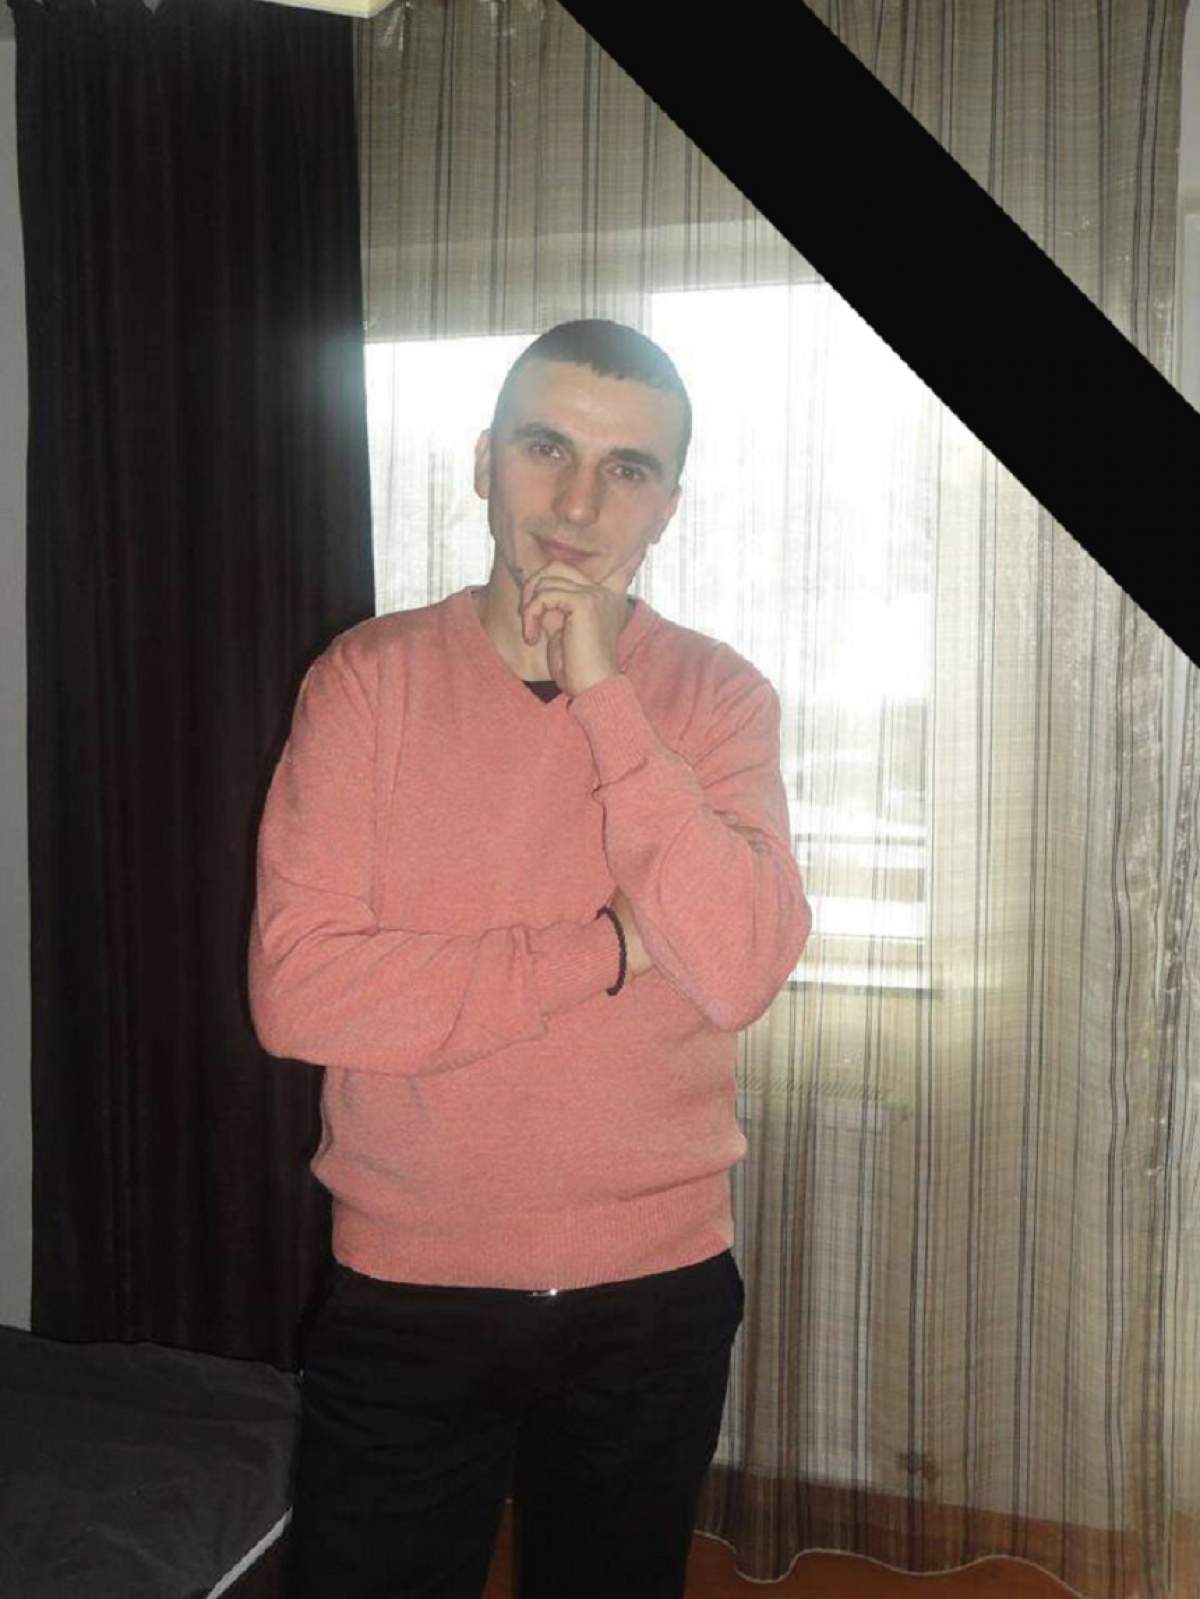 FOTO / Detalii cutremurătoare despre Andrei, tânărul care a făcut infarct la volan. Avea 31 de ani şi urma să se căsătorească